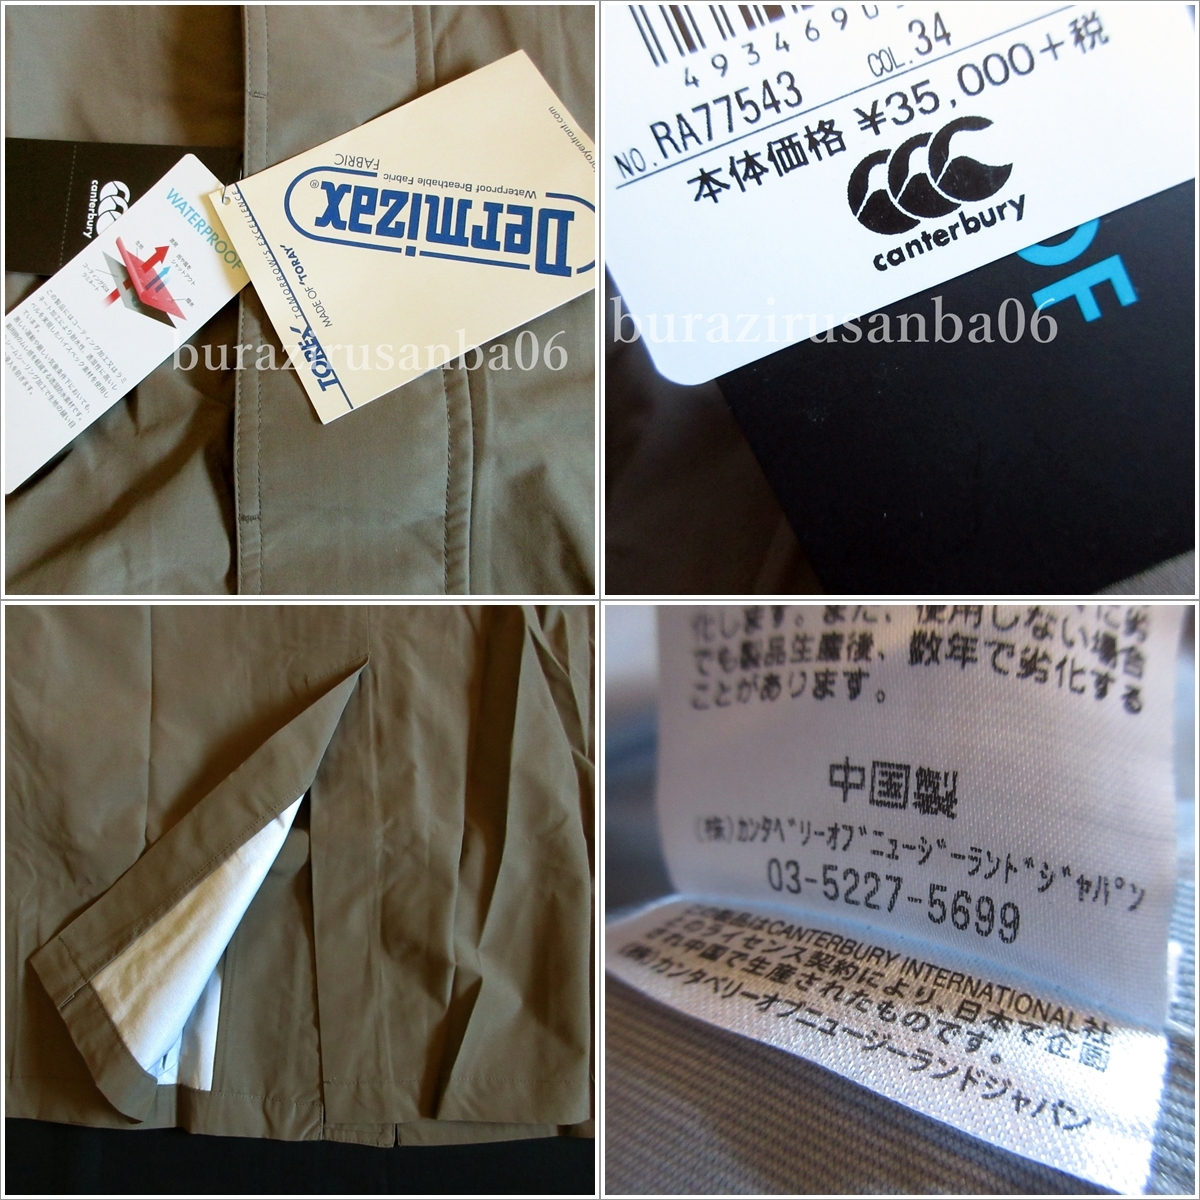  мужской 3L не использовался обычная цена 38,500 иен canterbury водонепроницаемый водонепроницаемый Dermizax 3re year tour coat водонепроницаемый пальто высокофункциональный материалы da-mi The ks высота водонепроницаемый 